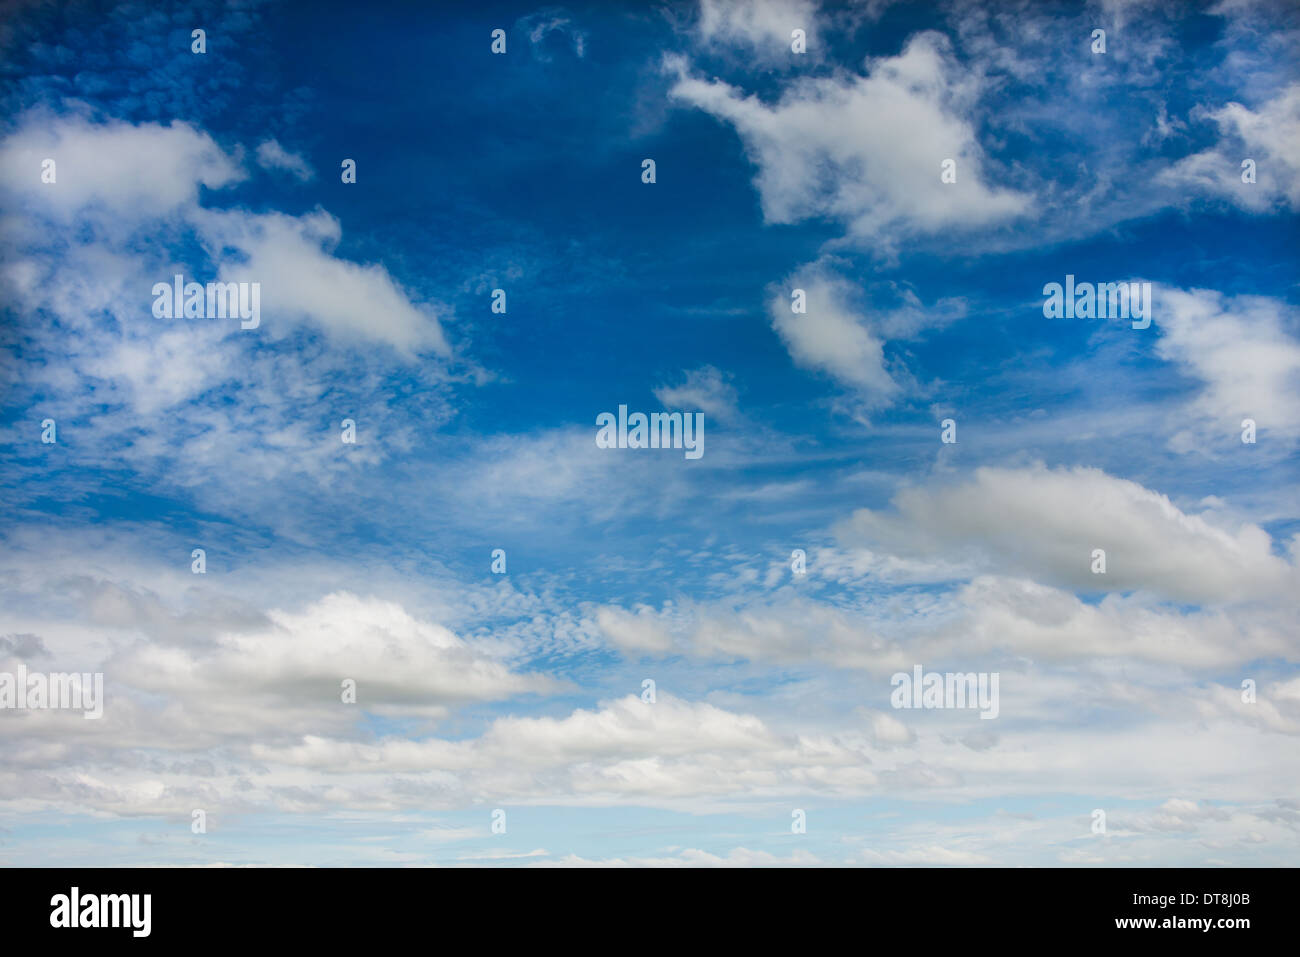 Cirruswolken vor blauem Himmel, Sommerhimmel, Schönwetter Stockfoto